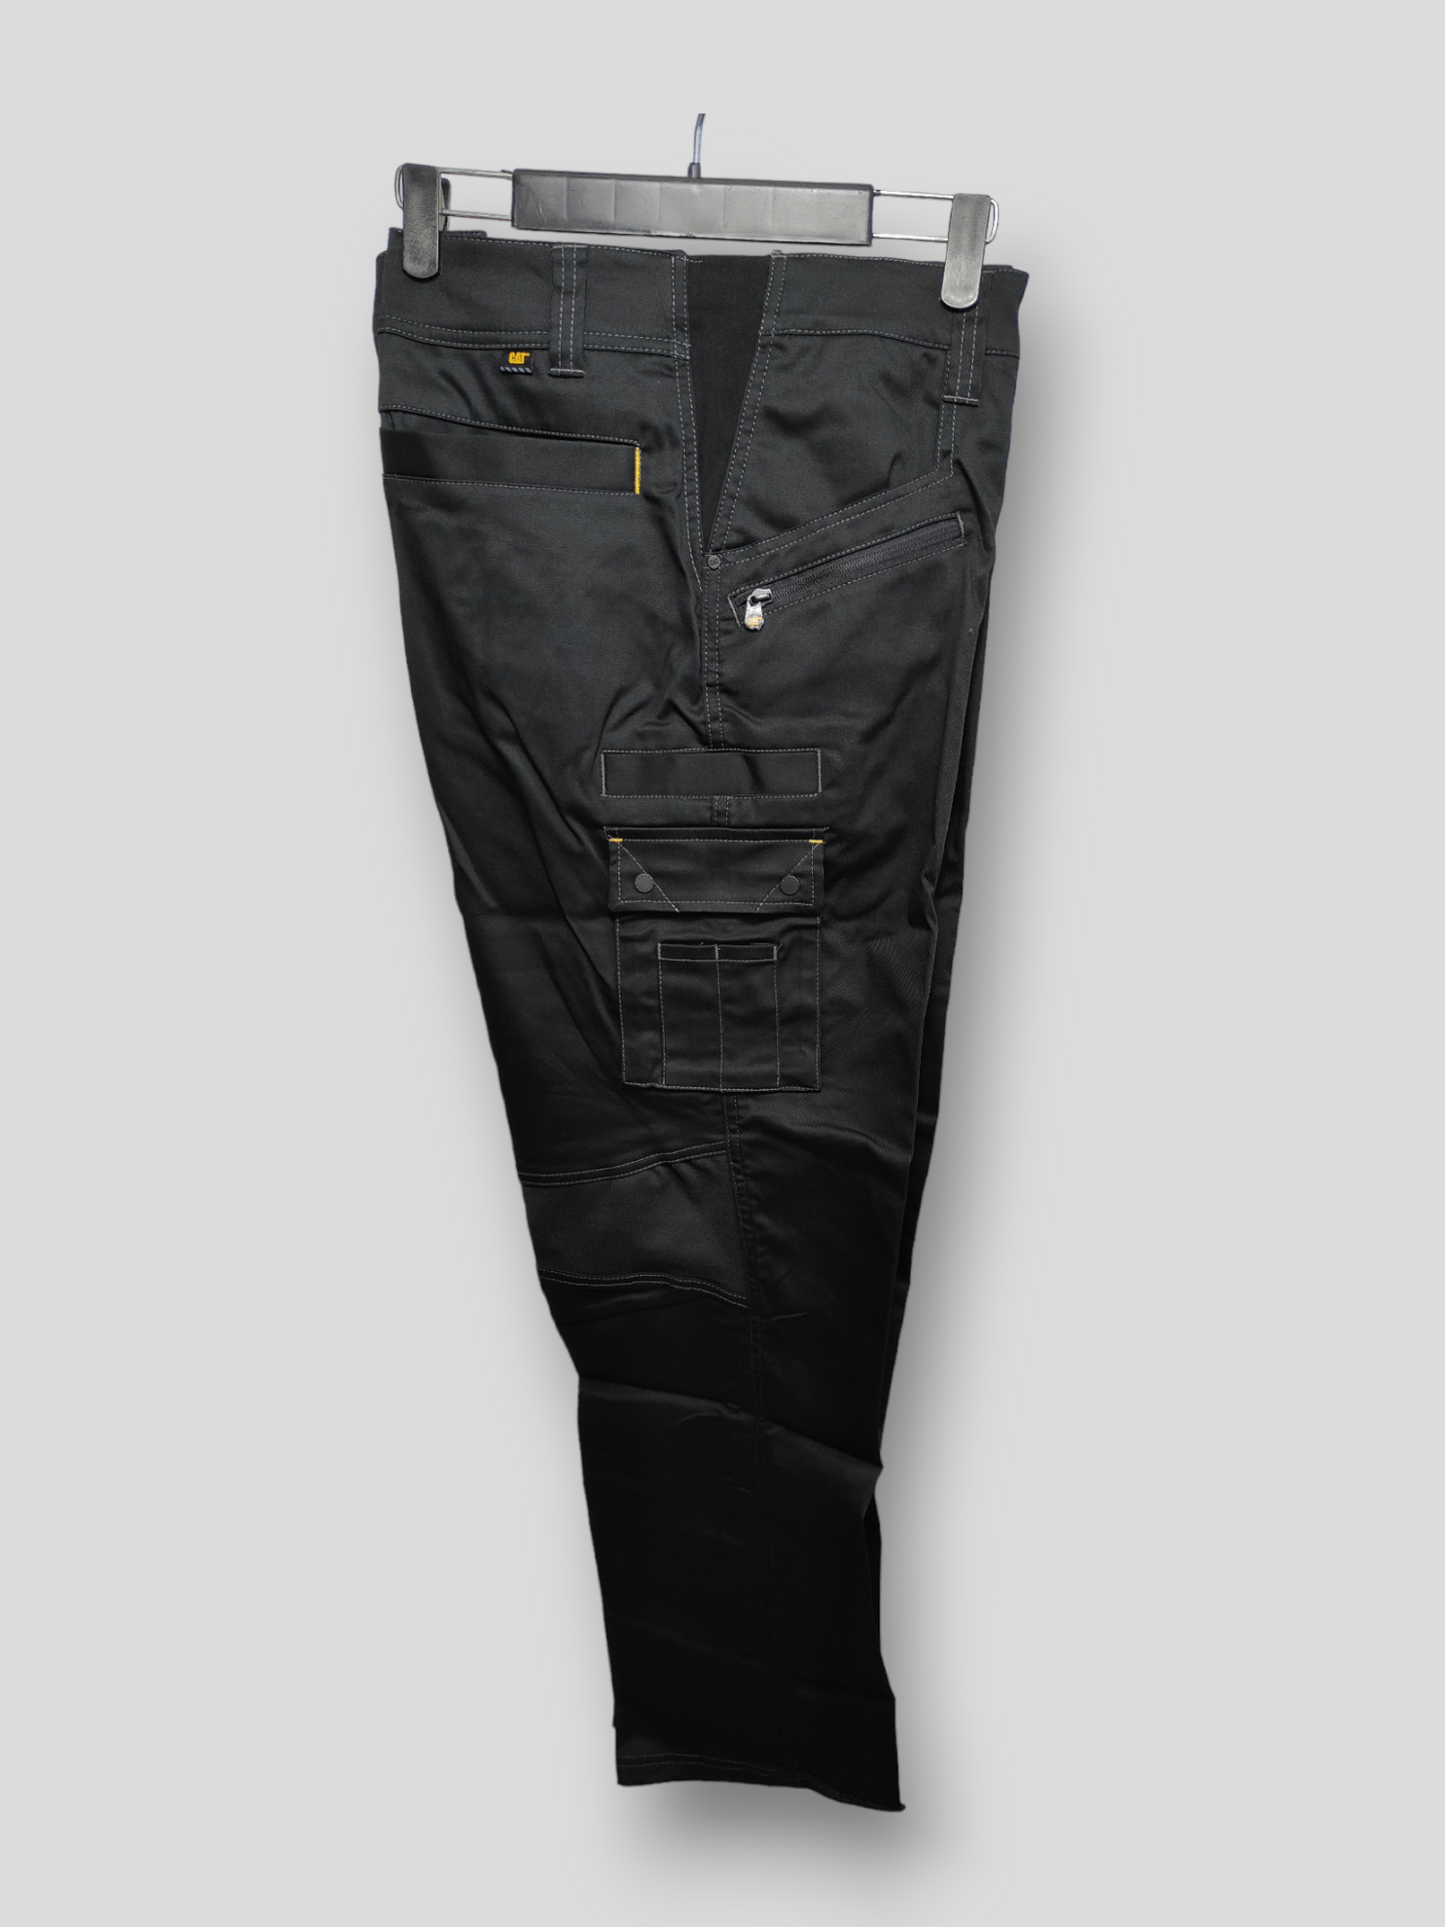 CAT Men's Work Wear Trousers in Black 40x32/38x34/36x30